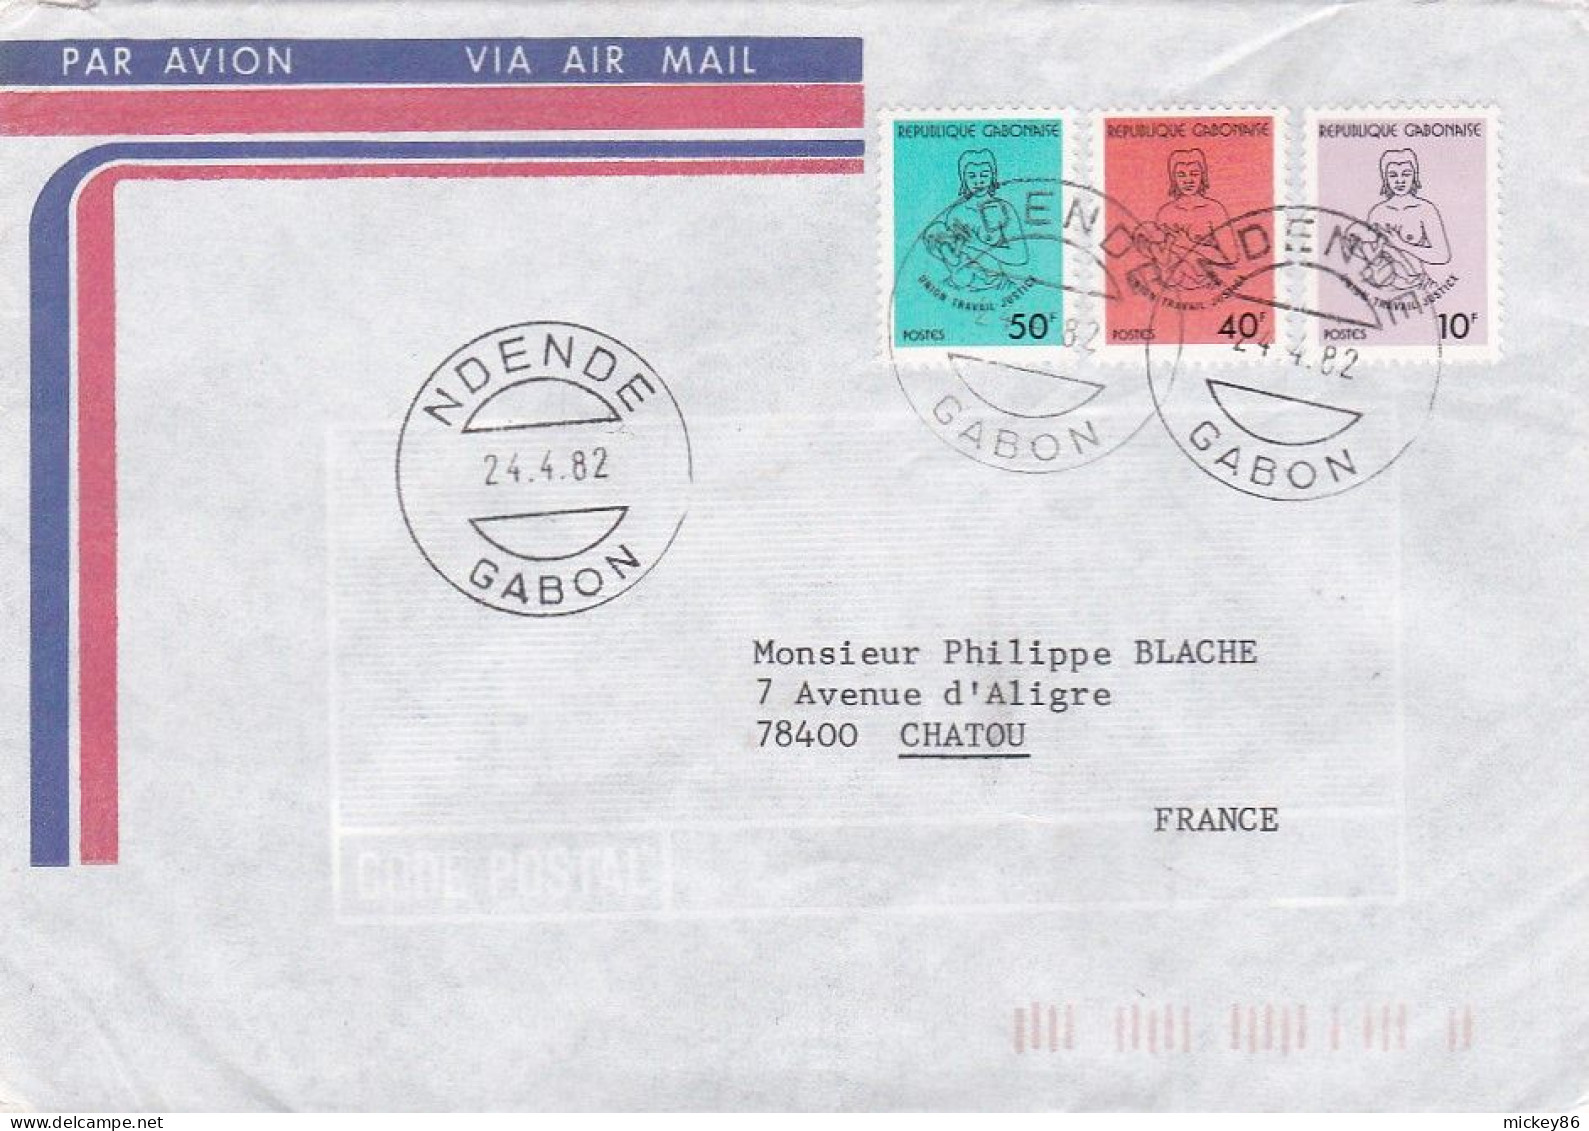 GABON -1982 -Lettre  NDENDE  à  CHATOU-78 (France).. Timbres Divers Sur Lettre...... Cachet. - Gabun (1960-...)